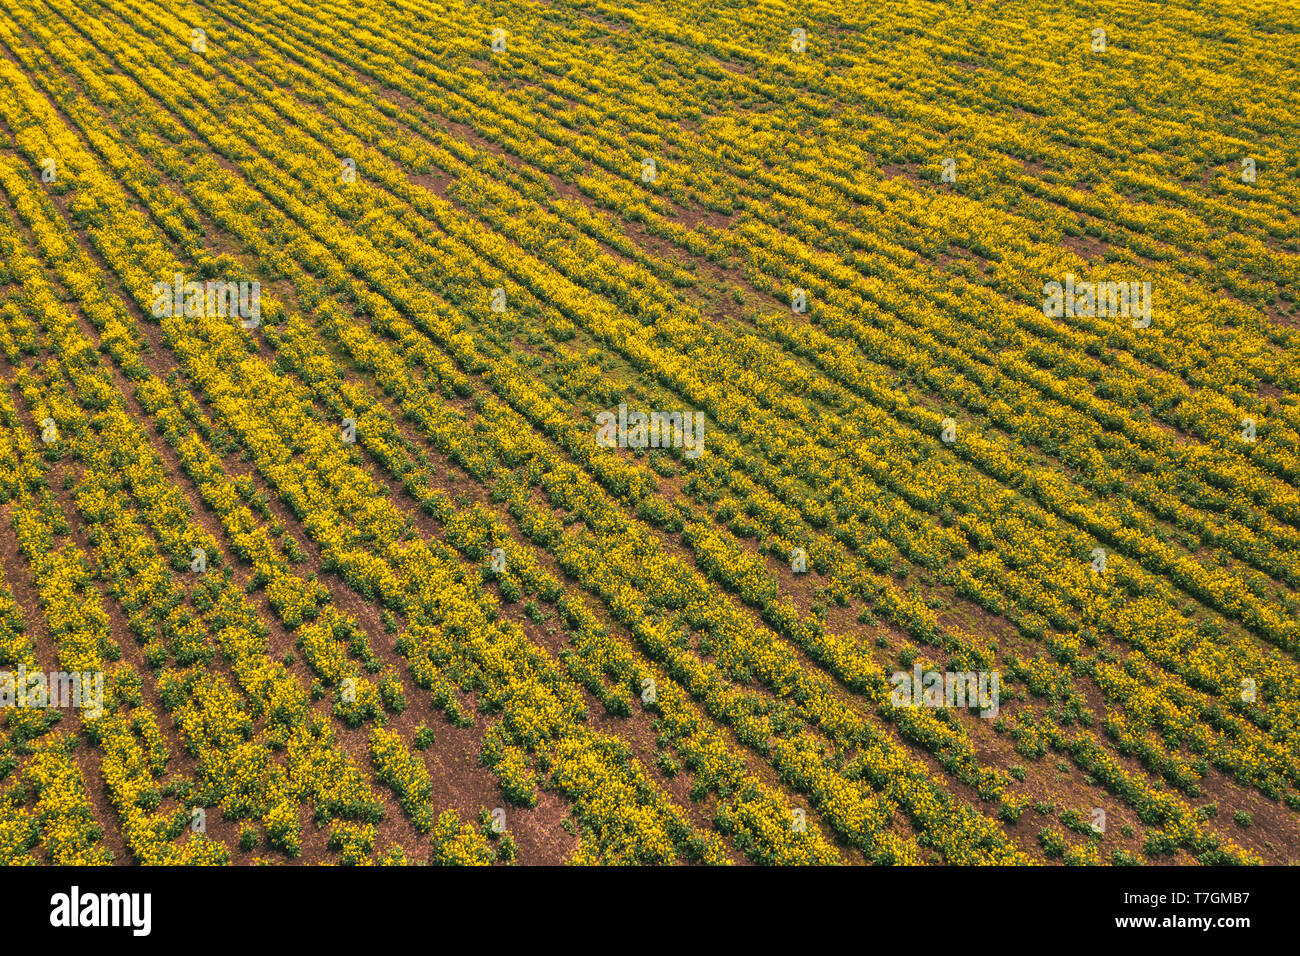 Vista aerea di canola campo di colza in cattivo stato a causa della siccità stagionale e clima arido Foto Stock